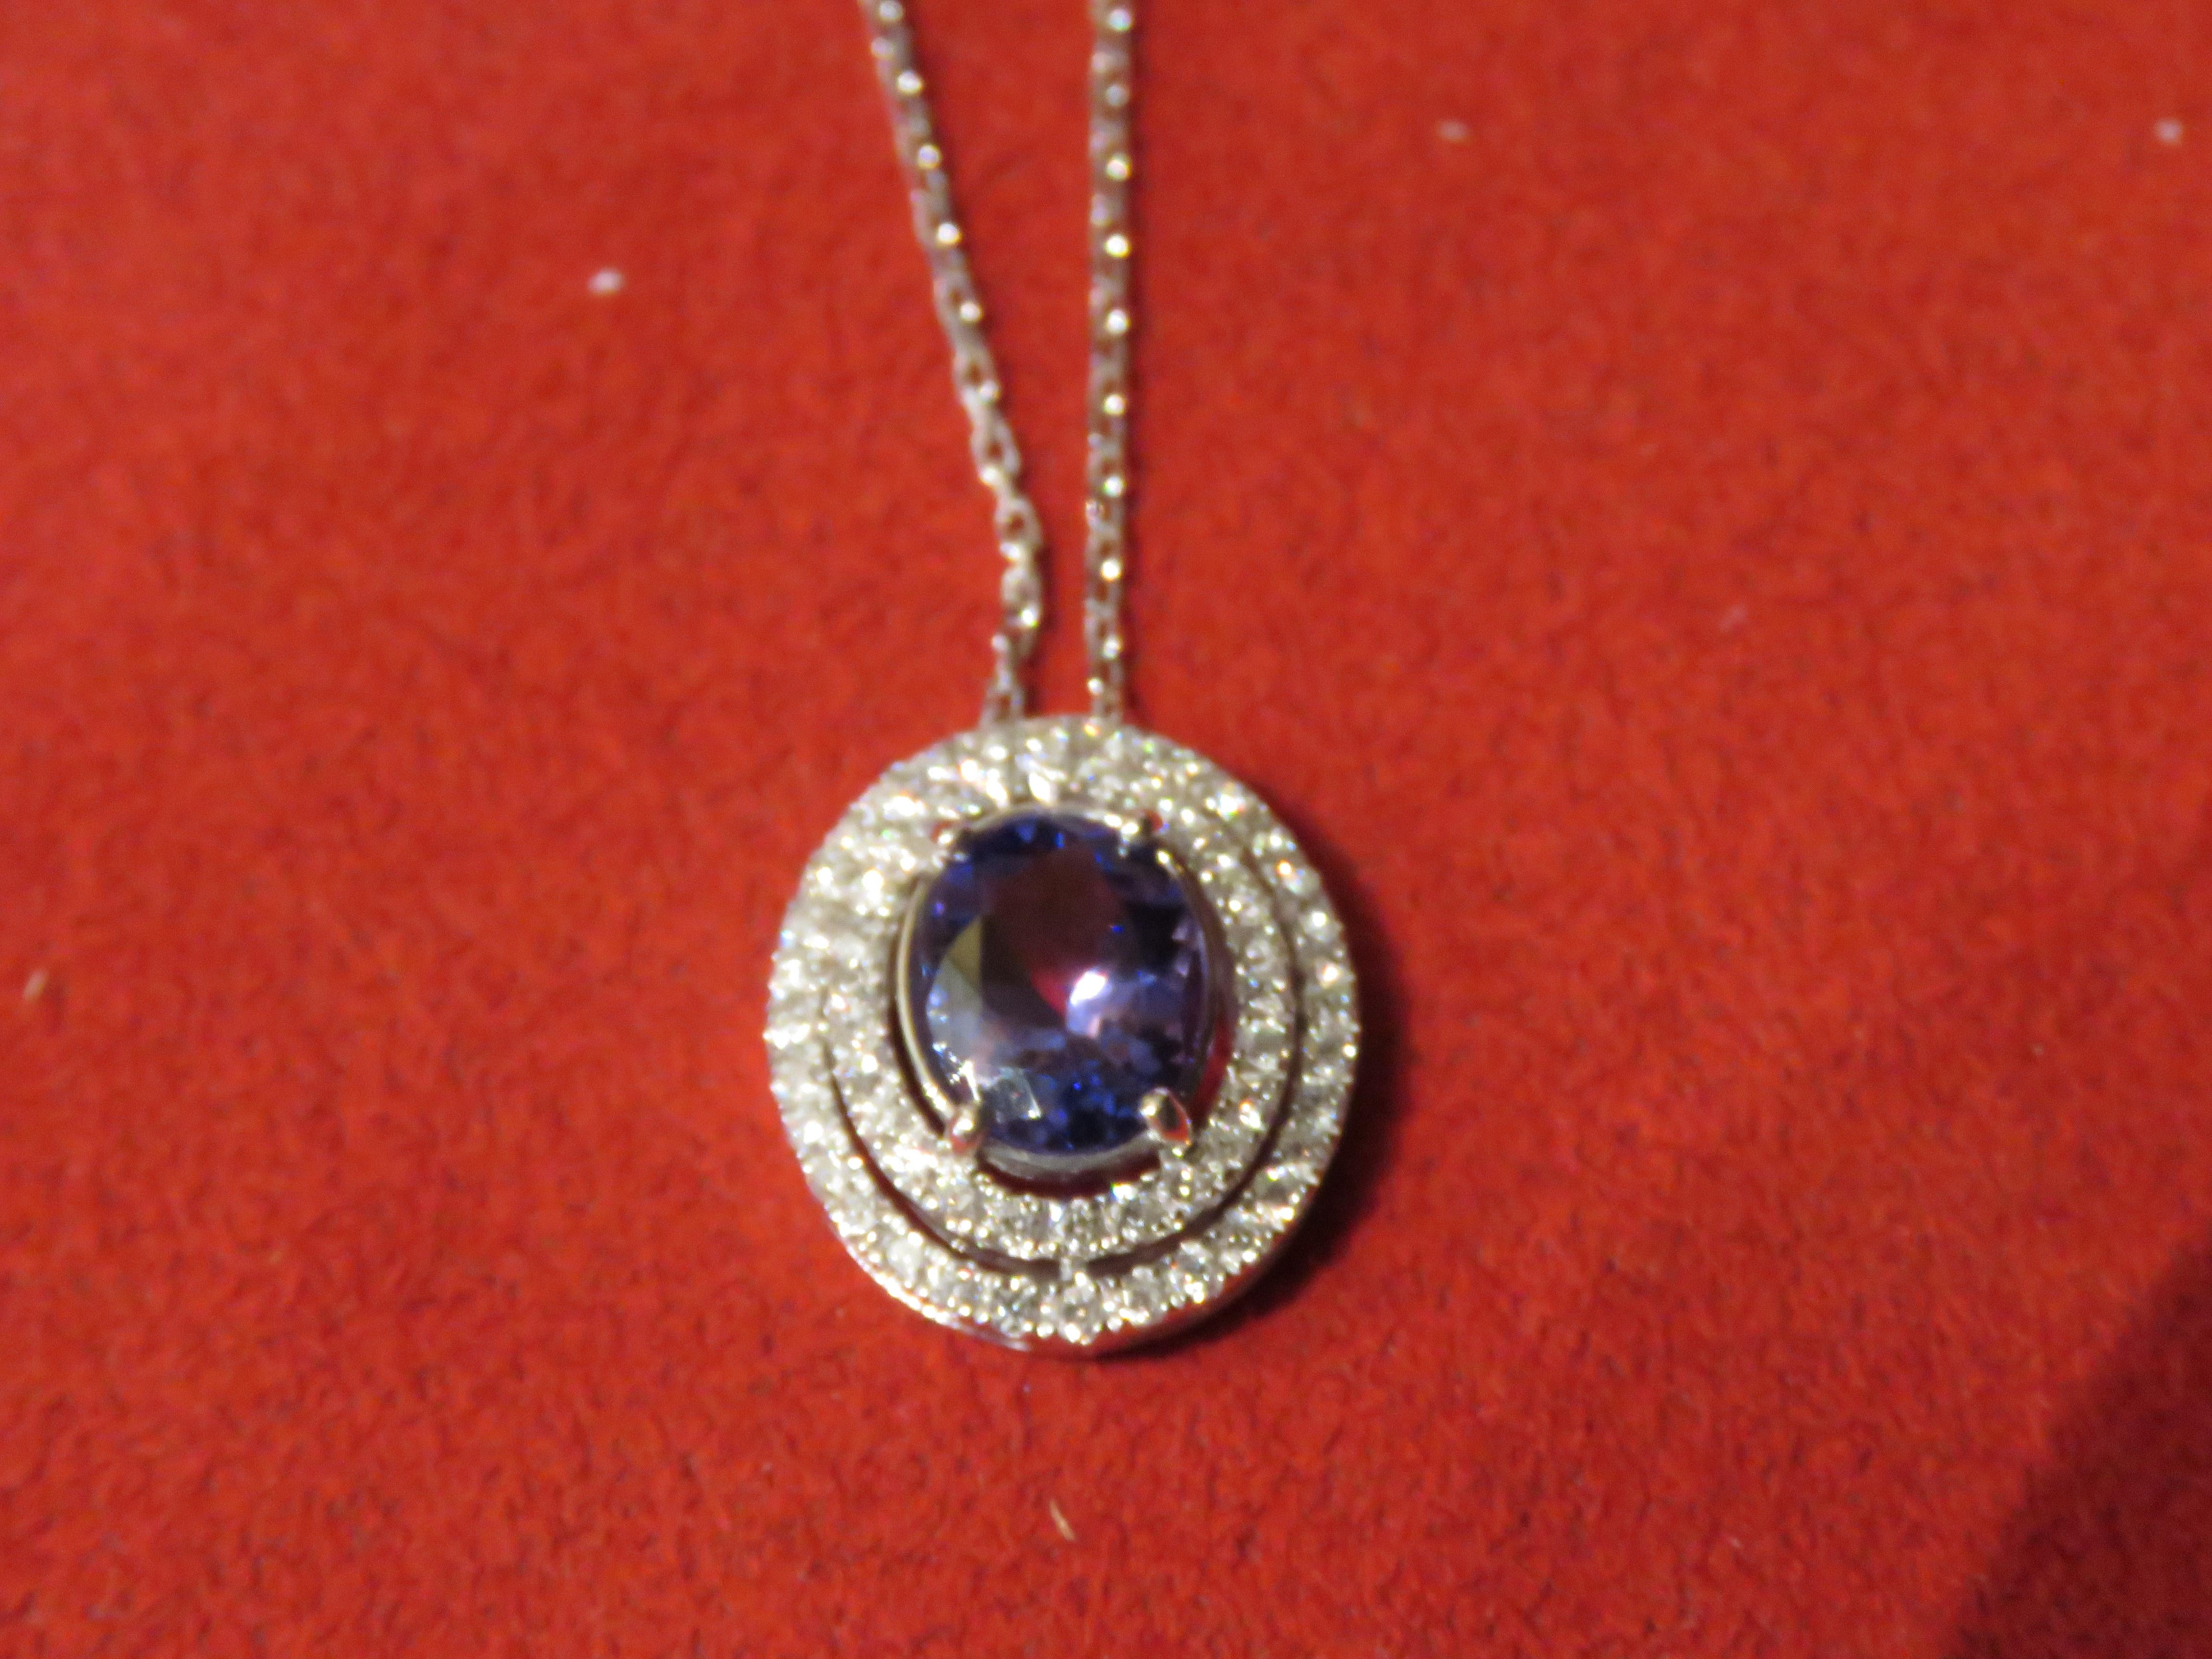 L'article suivant que nous proposons est un collier pendentif en or 18KT avec une Tanzanite et un diamant de taille ovale, rare, important et rayonnant. Le collier est composé d'une magnifique Tanzanite de taille ovale entourée et ornée d'un double